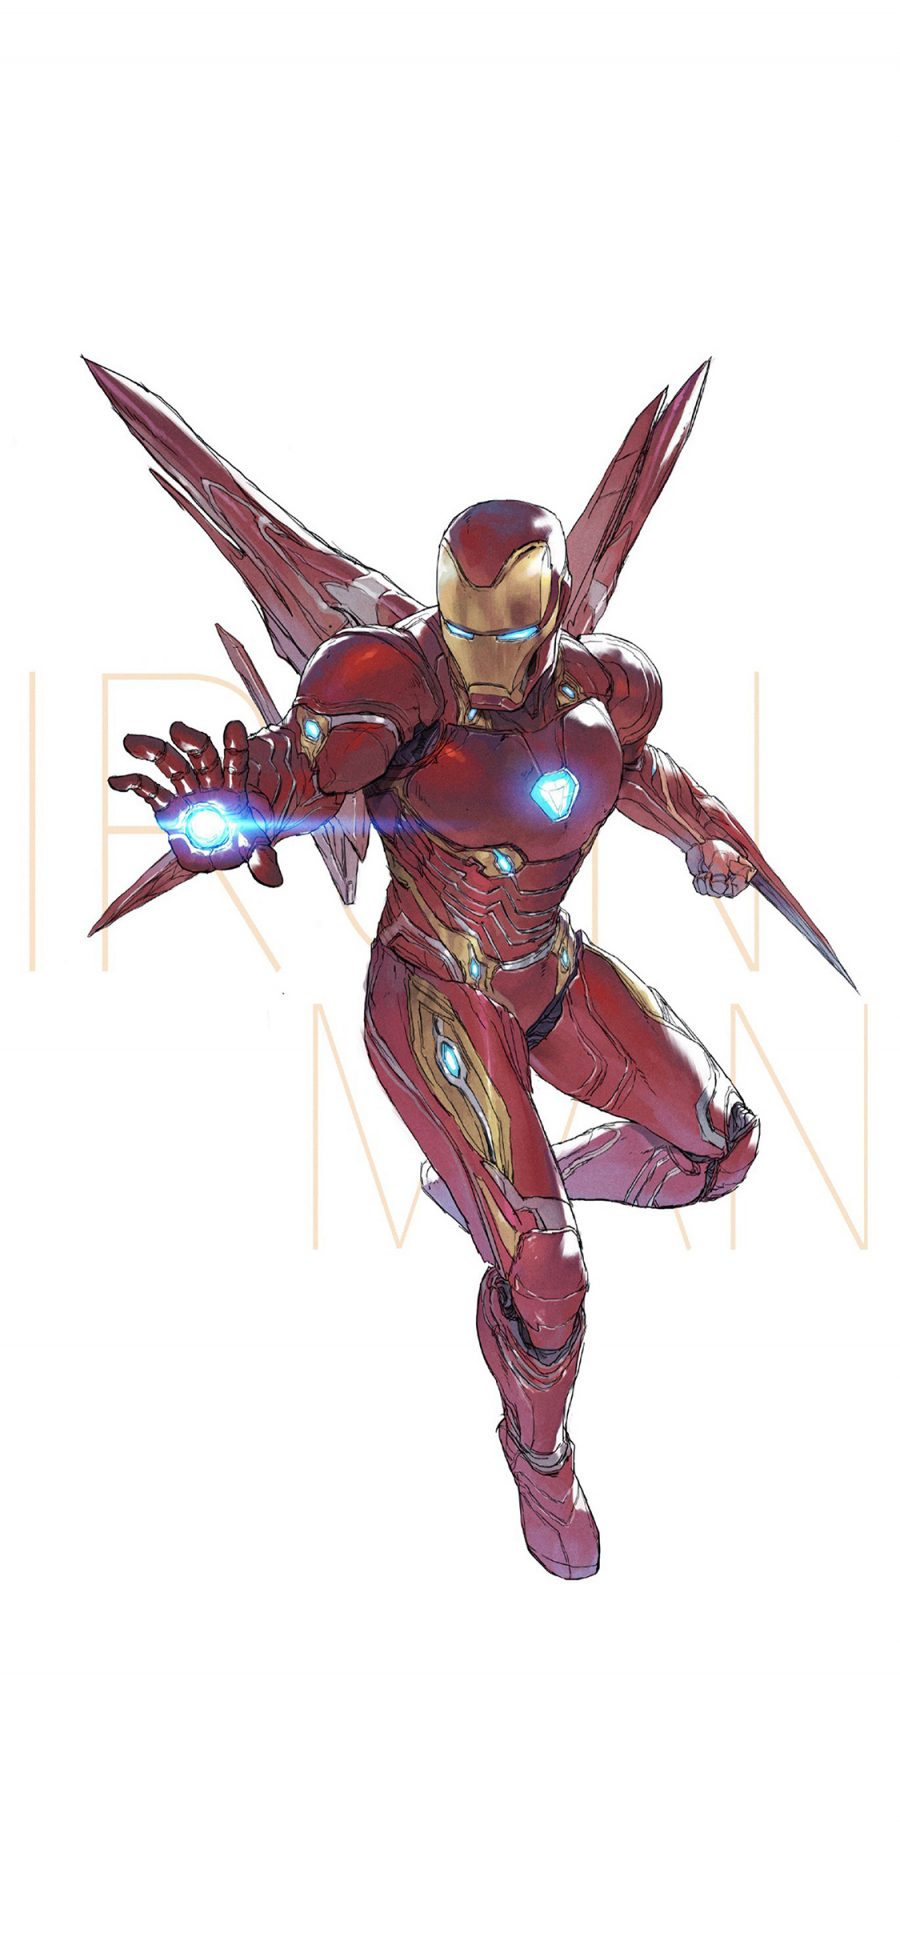 [2436×1125]钢铁侠 超级英雄 欧美 复仇者联盟 手绘 苹果手机动漫壁纸图片